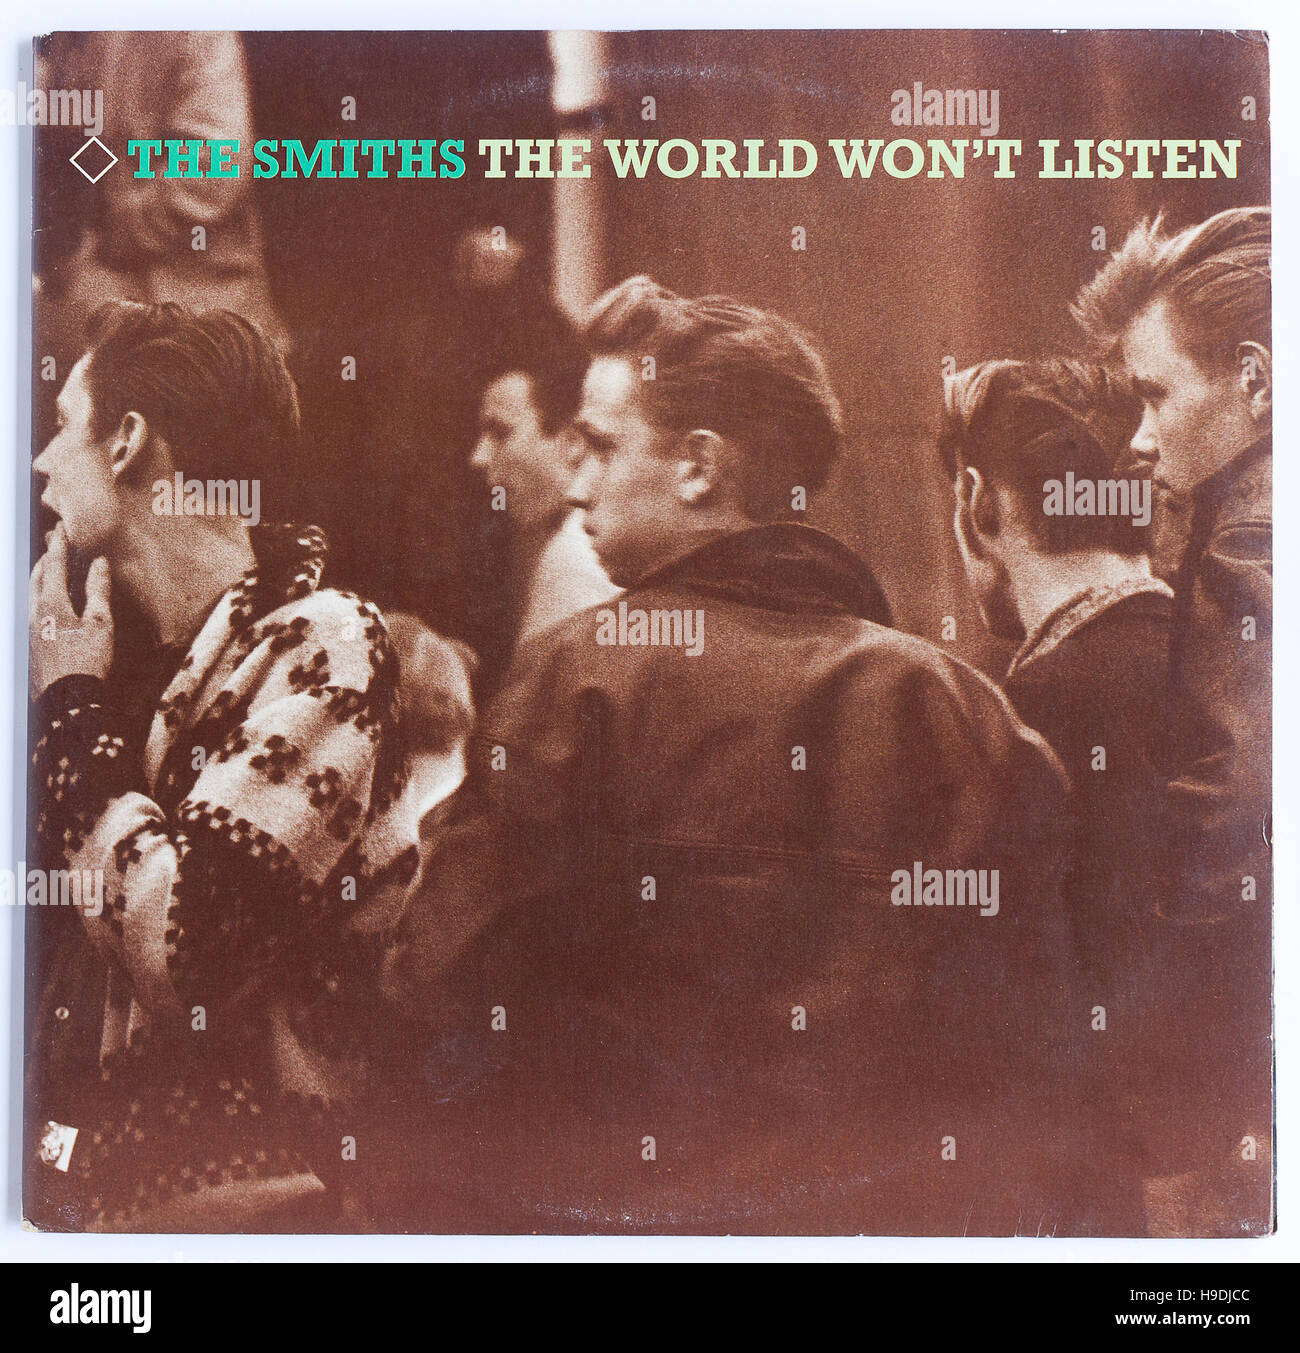 Couverture de The Smiths 'le monde n'écoutera pas la compilation de 1987 Album sur le commerce brut - usage éditorial uniquement Banque D'Images